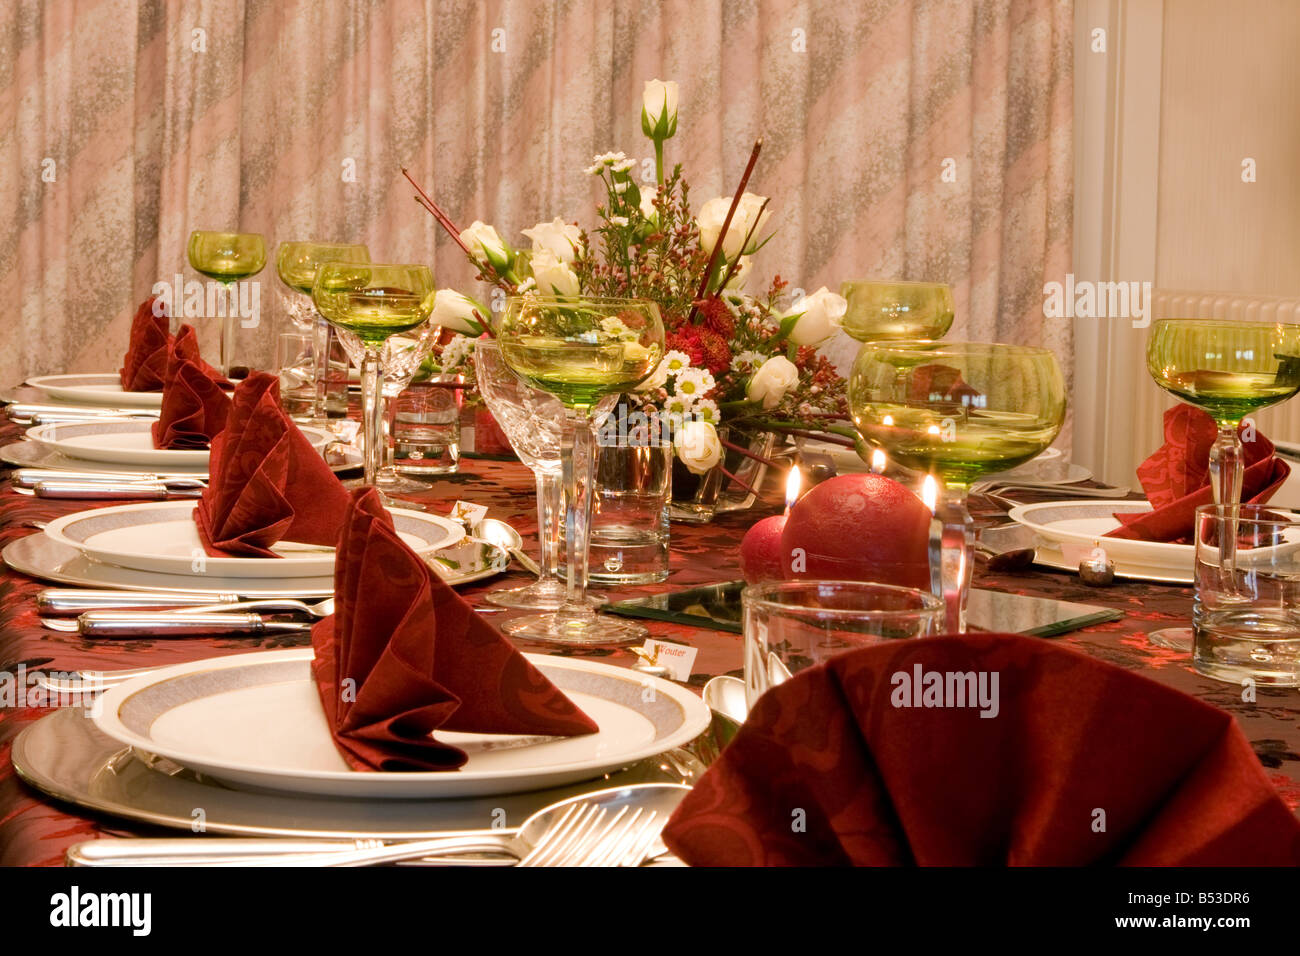 Table de dîner de Noël avec des fleurs bougies et serviettes de table rouge Banque D'Images